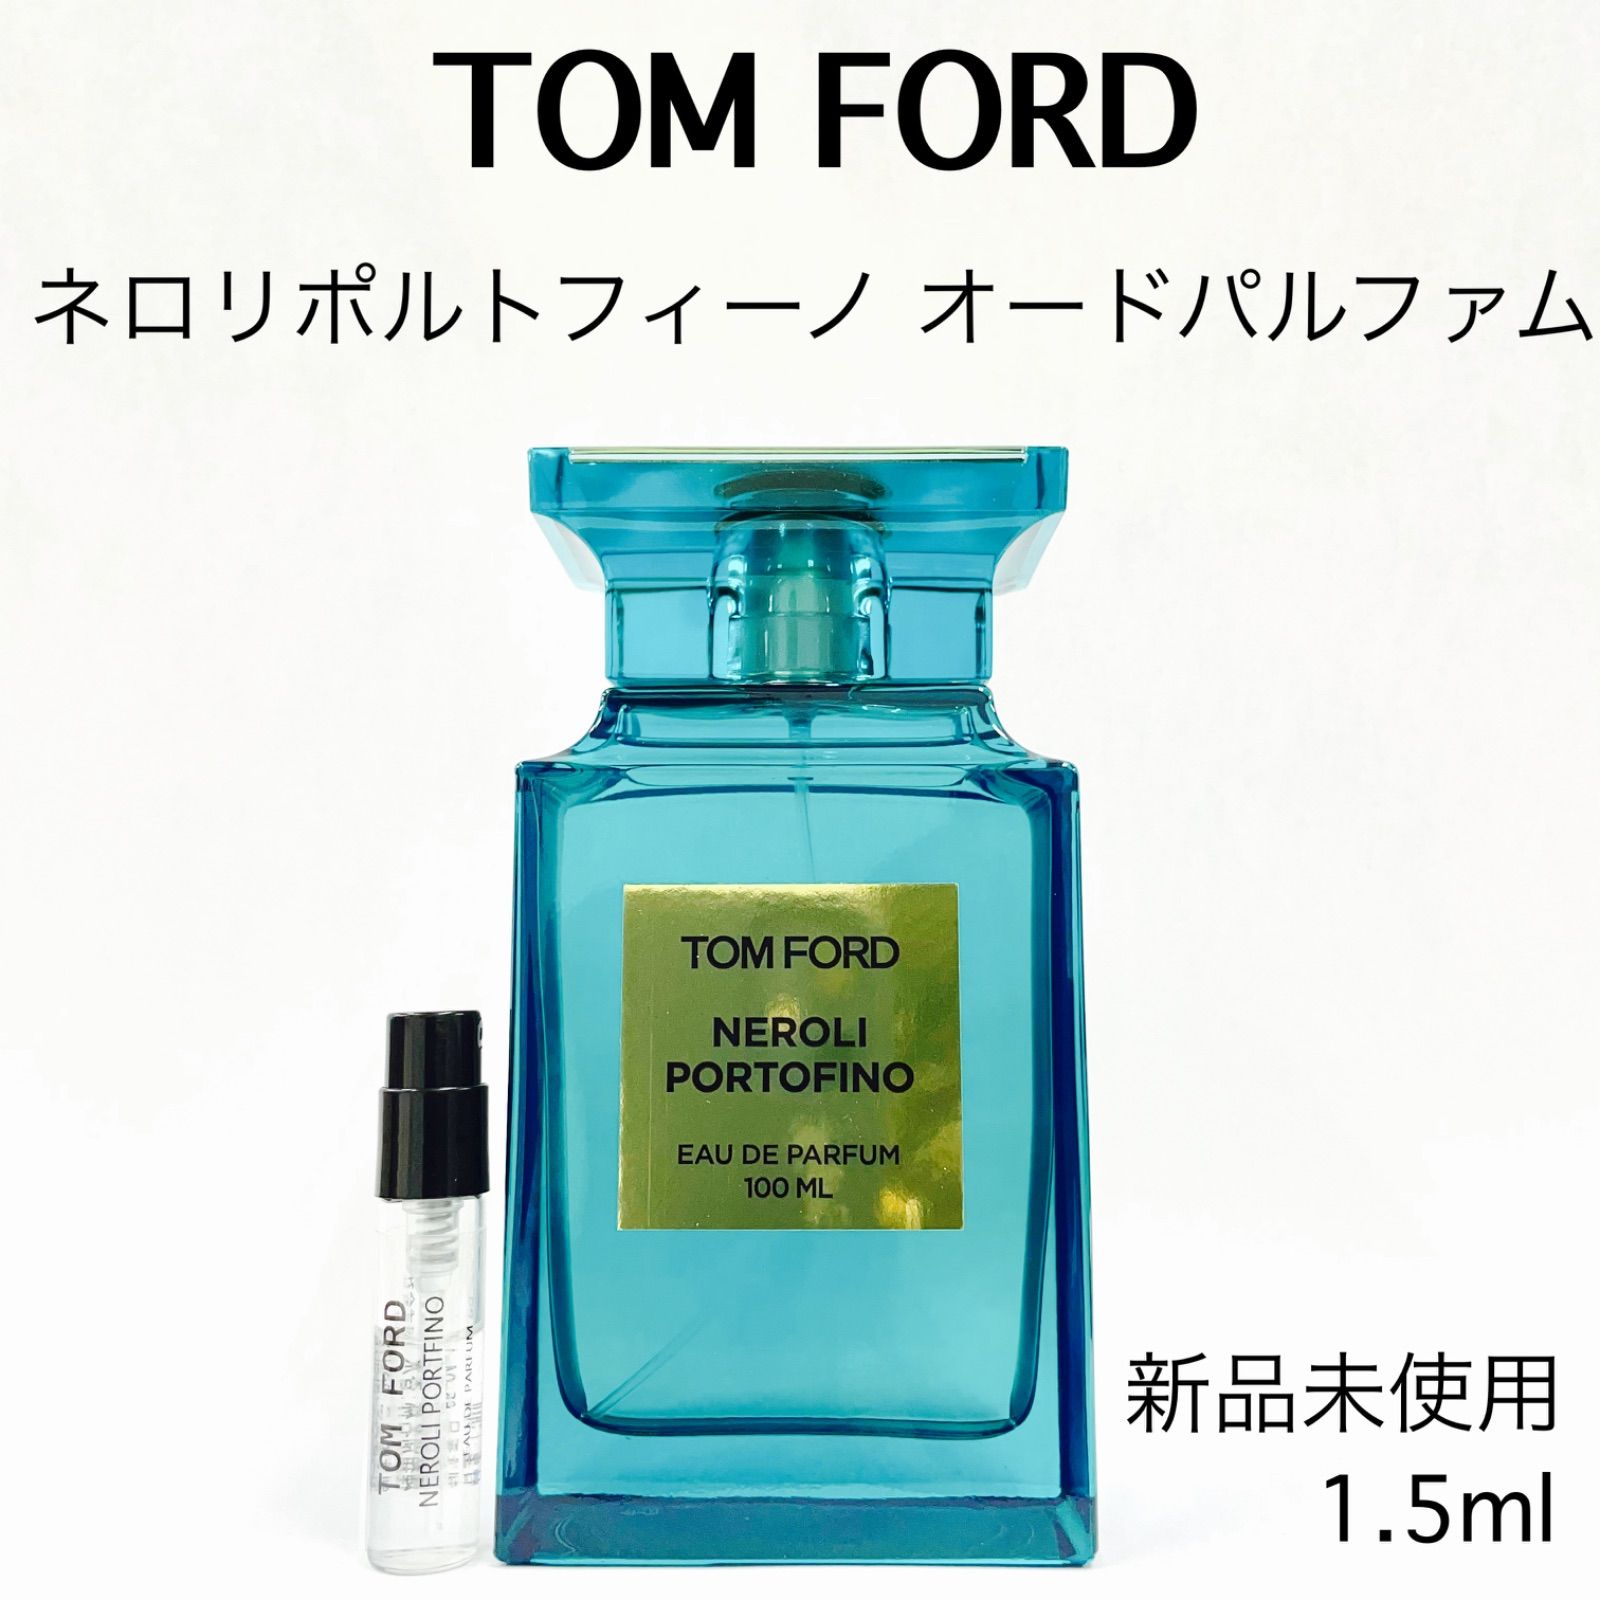 トムフォード香水 ネロリポルトフィーノ オードパルファム100ml